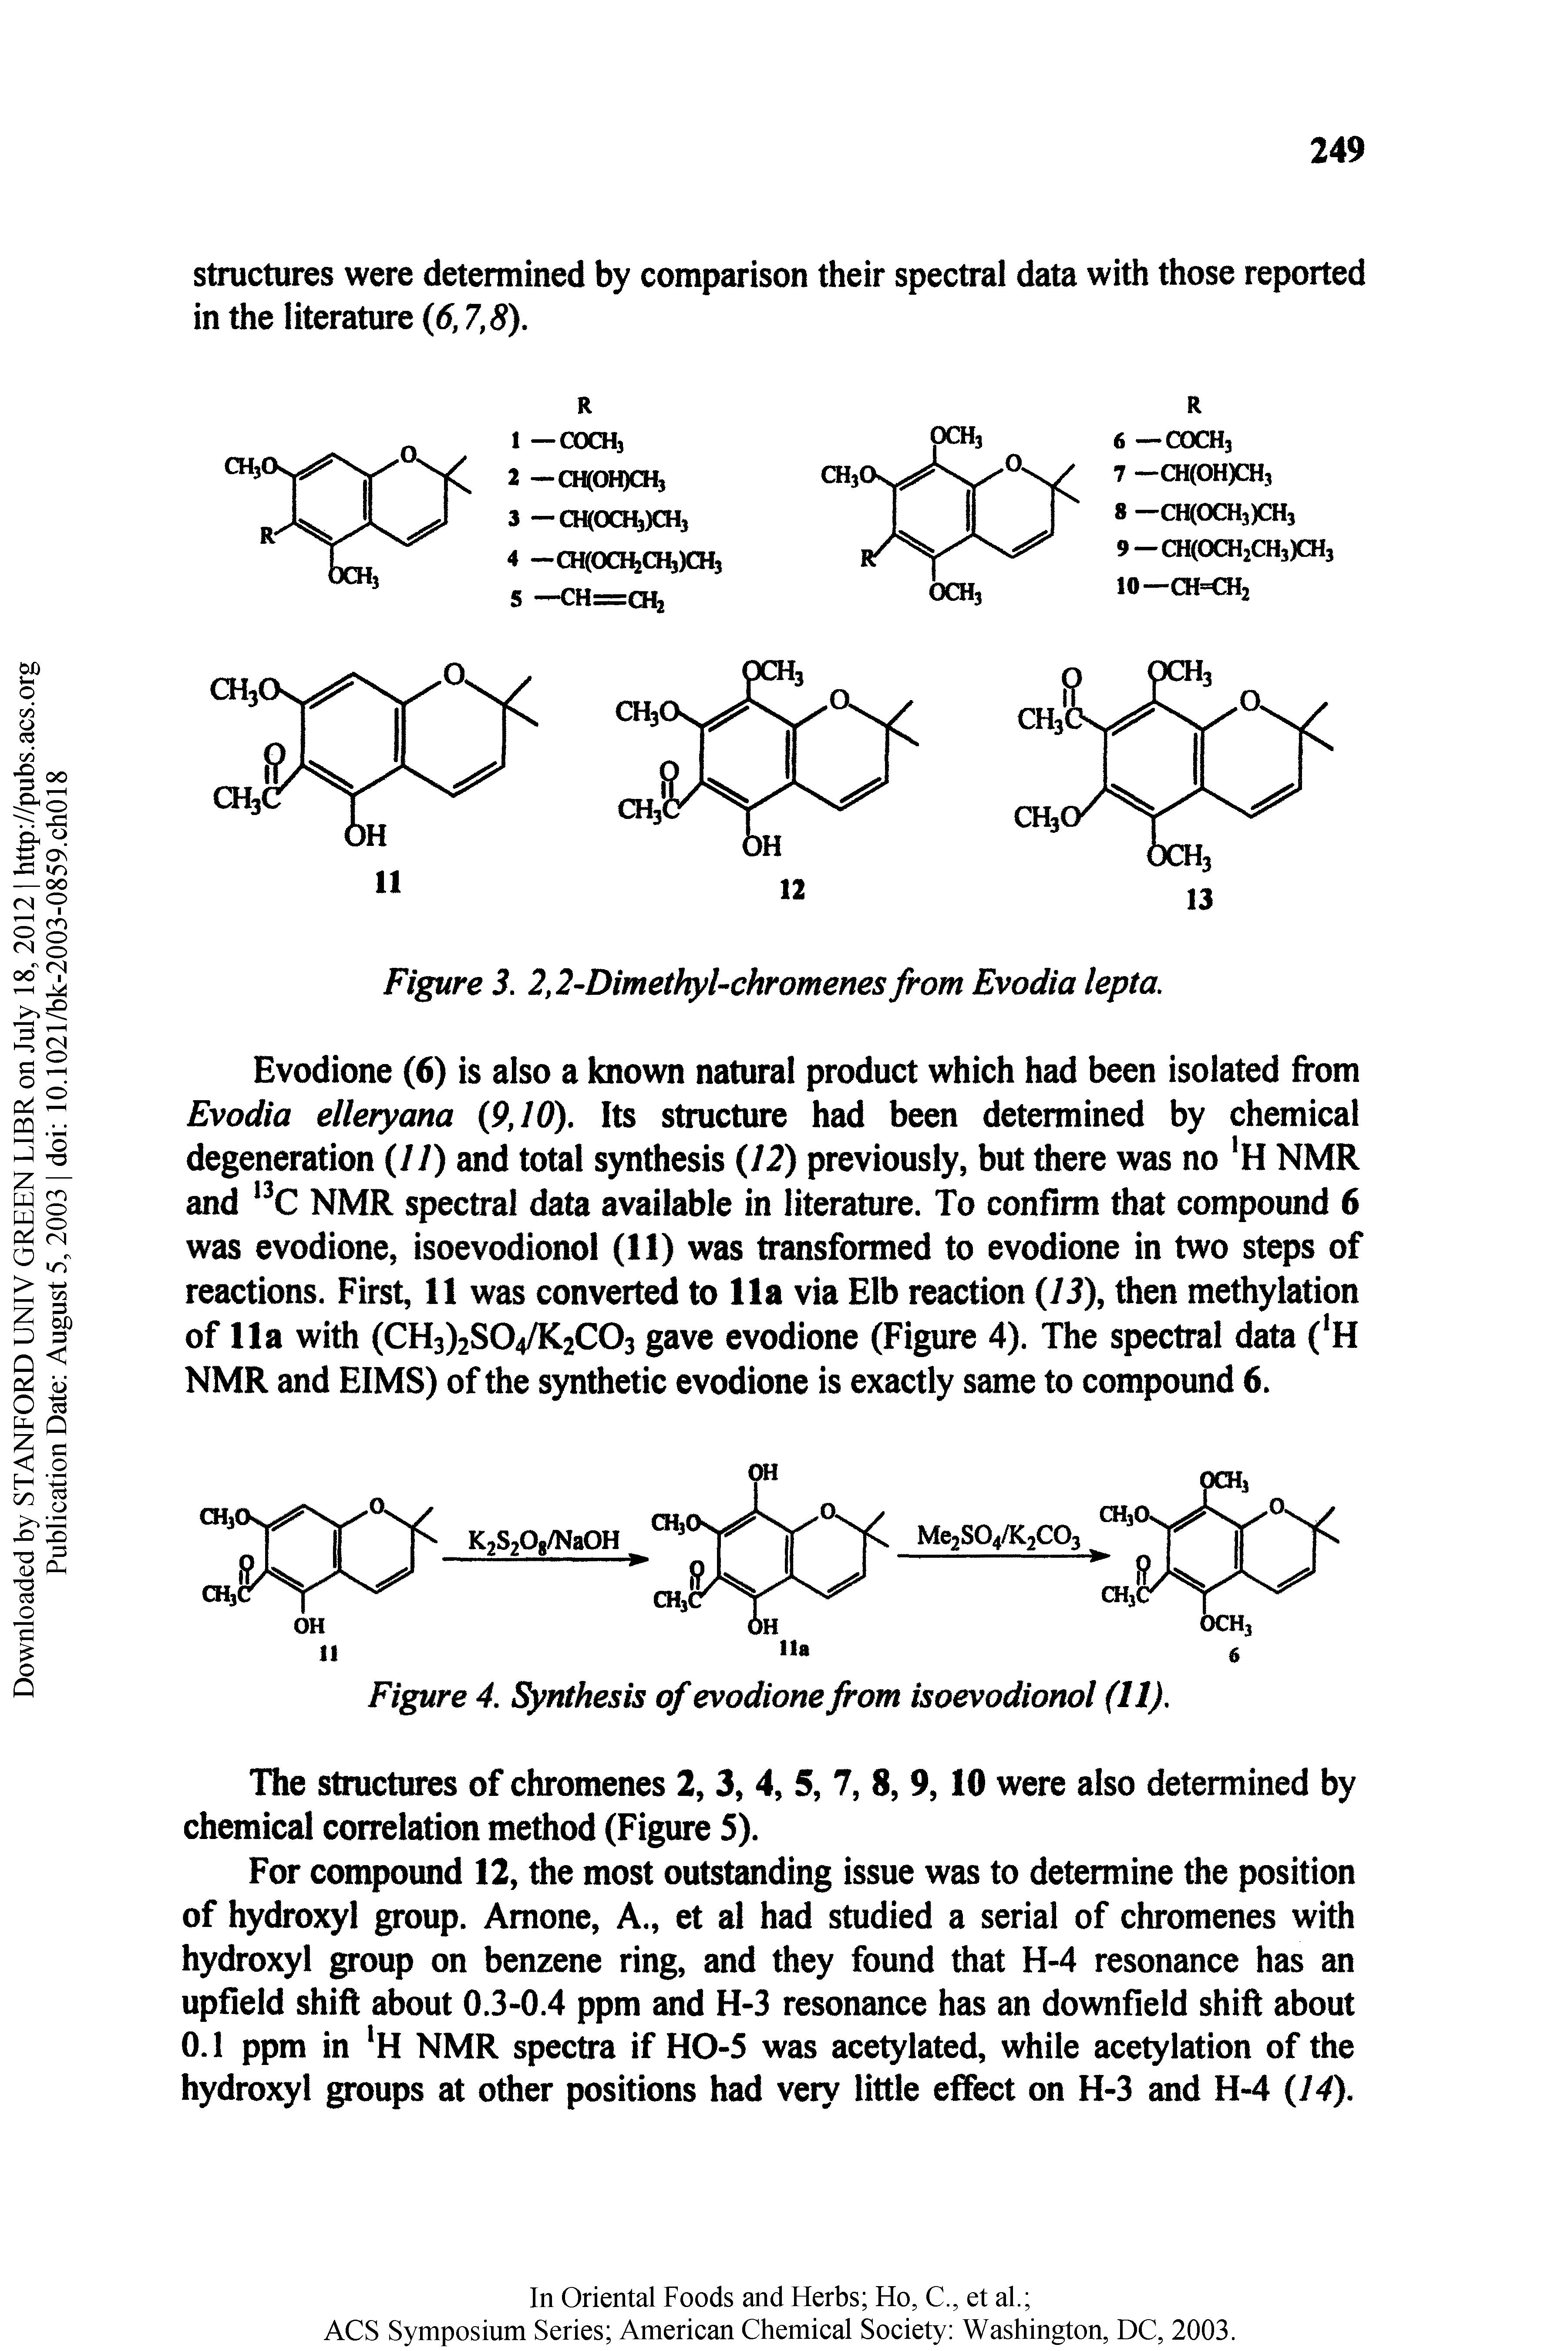 Figure 3. 2,2-Dimethyl-chromenes from Evodia lepta.